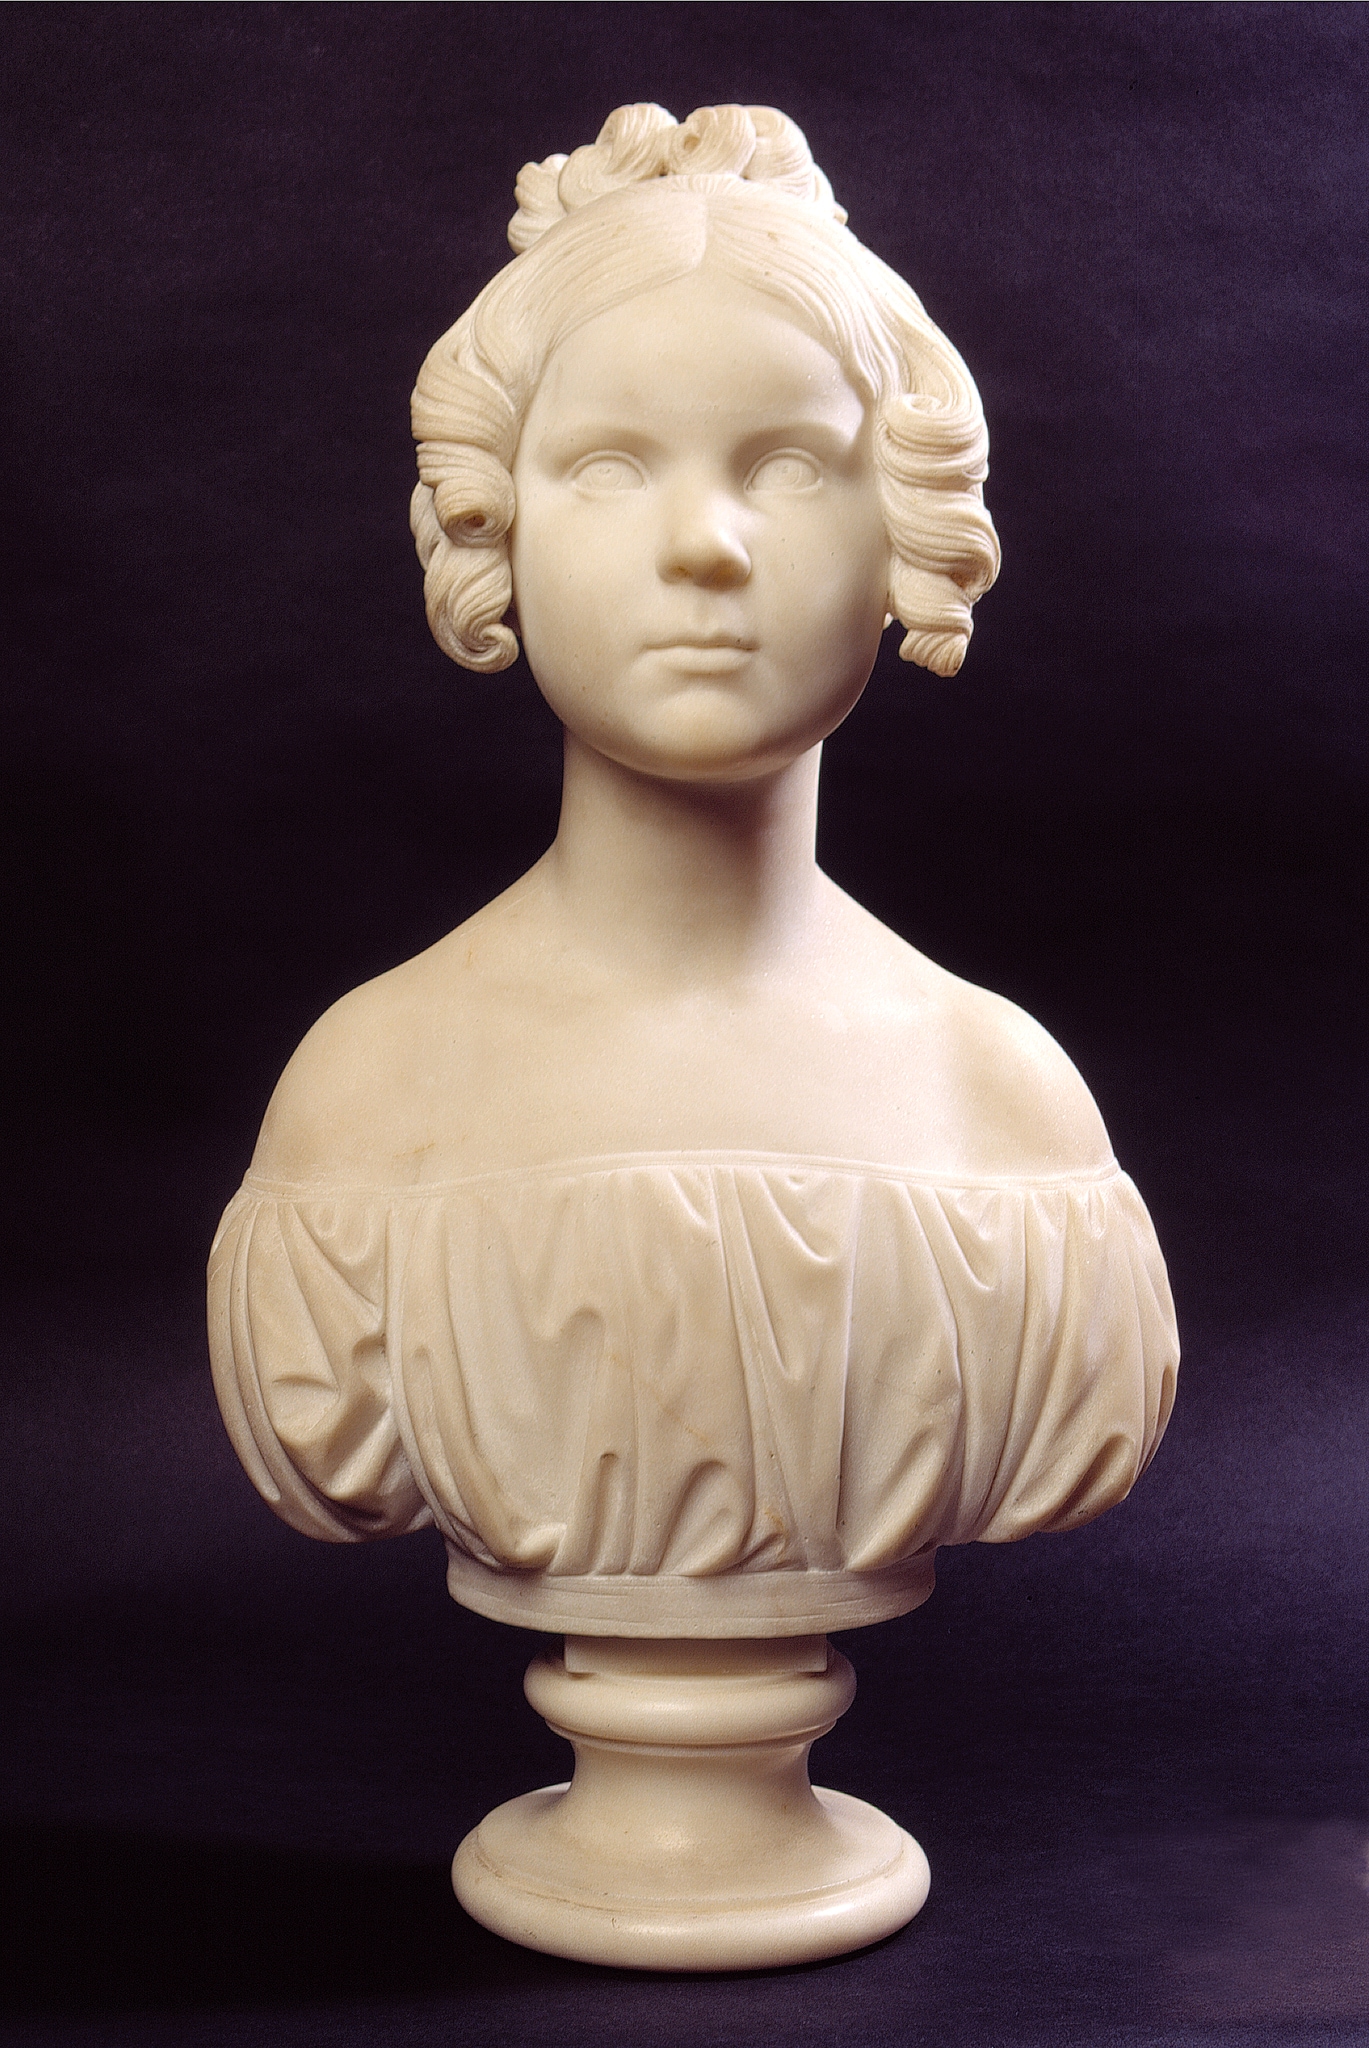 Bertel Thorvaldsen (attribuito) (Copenhagen 1770-1844) - Maria Massani 1838 circa marmo, h 60 cm MR 36492